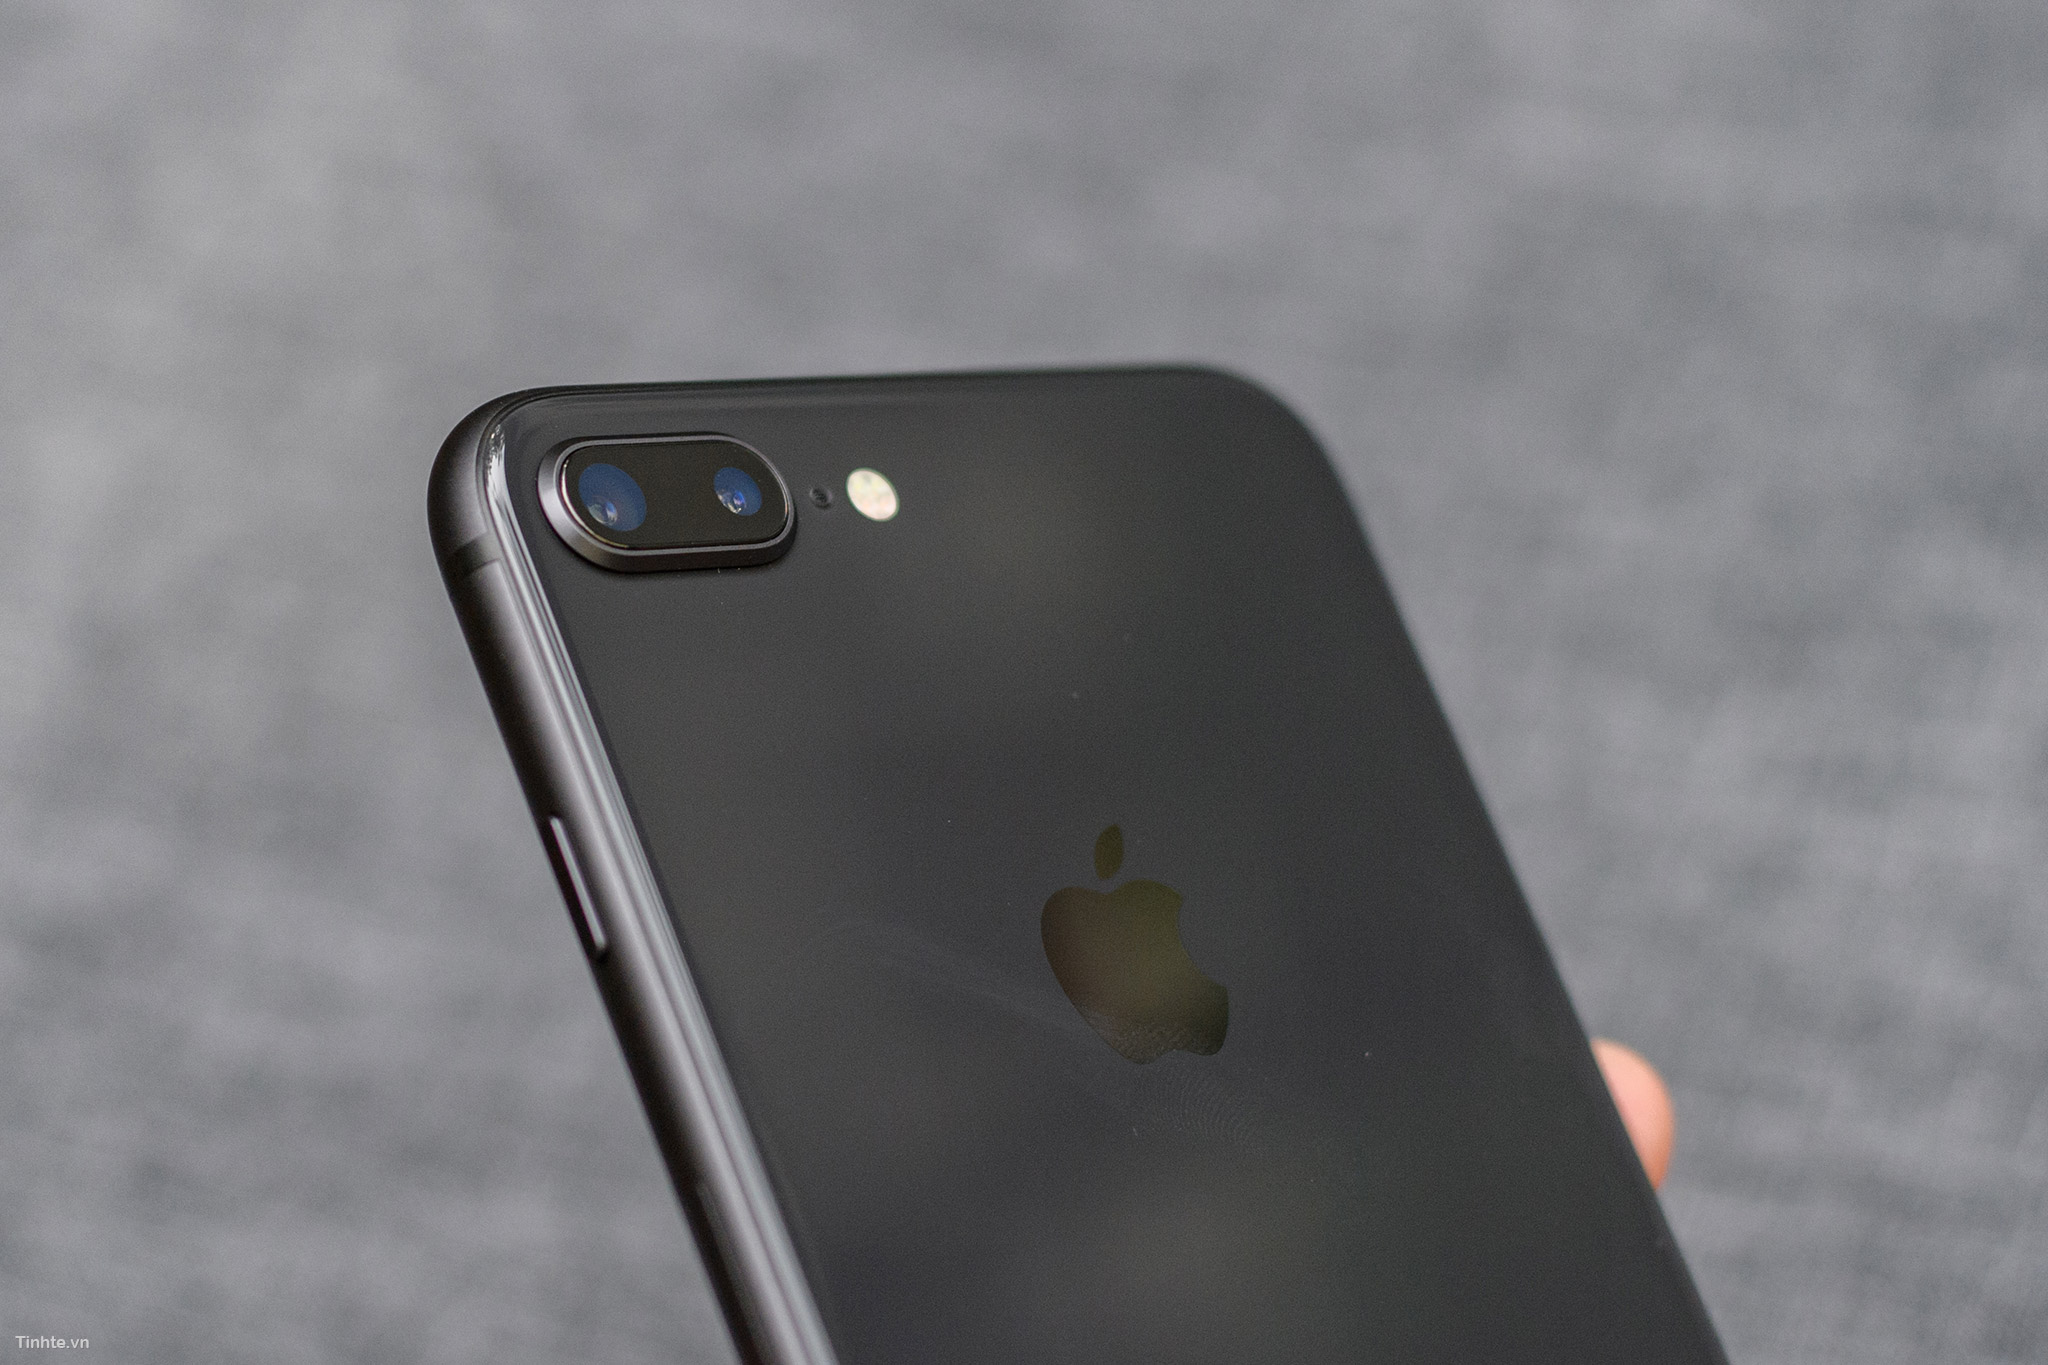 iPhone 8/8 Plus Space Gray - Nếu bạn đang tìm kiếm một sản phẩm đẳng cấp với ngoại hình sang trọng và tính năng ưu việt, iPhone 8/8 Plus Space Gray là một lựa chọn tuyệt vời. Thiết kế đột phá và các tính năng tiên tiến của chiếc iPhone này sẽ chinh phục ngay cả những khách hàng khó tính nhất. Hãy xem bức hình để được trải nghiệm tất cả các tính năng đó.